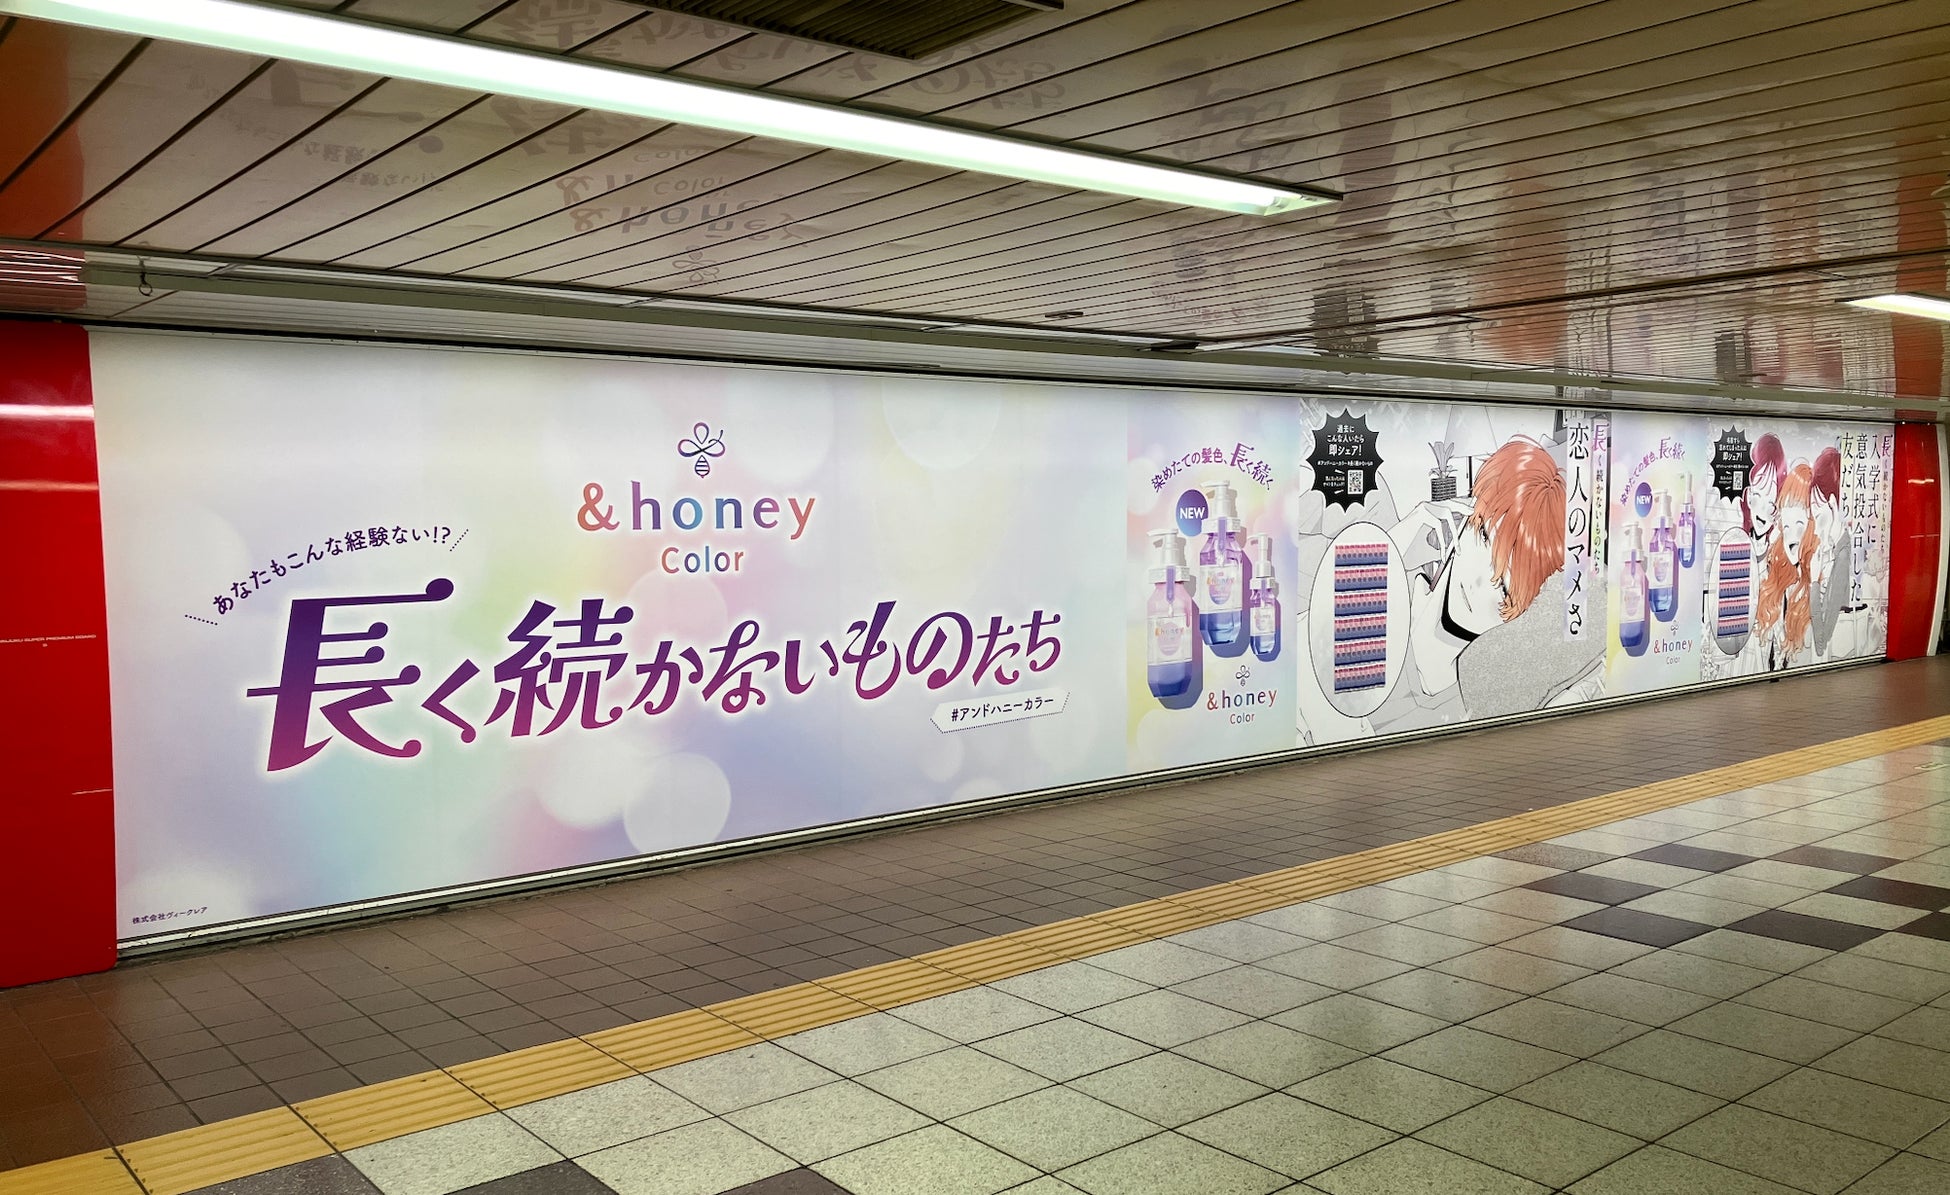 LDK the Beauty Men　ヘアオイル１位（2024年３月号）を獲得したメンズコスメブランドのVIR TOKYOからBBクリームが新発売。